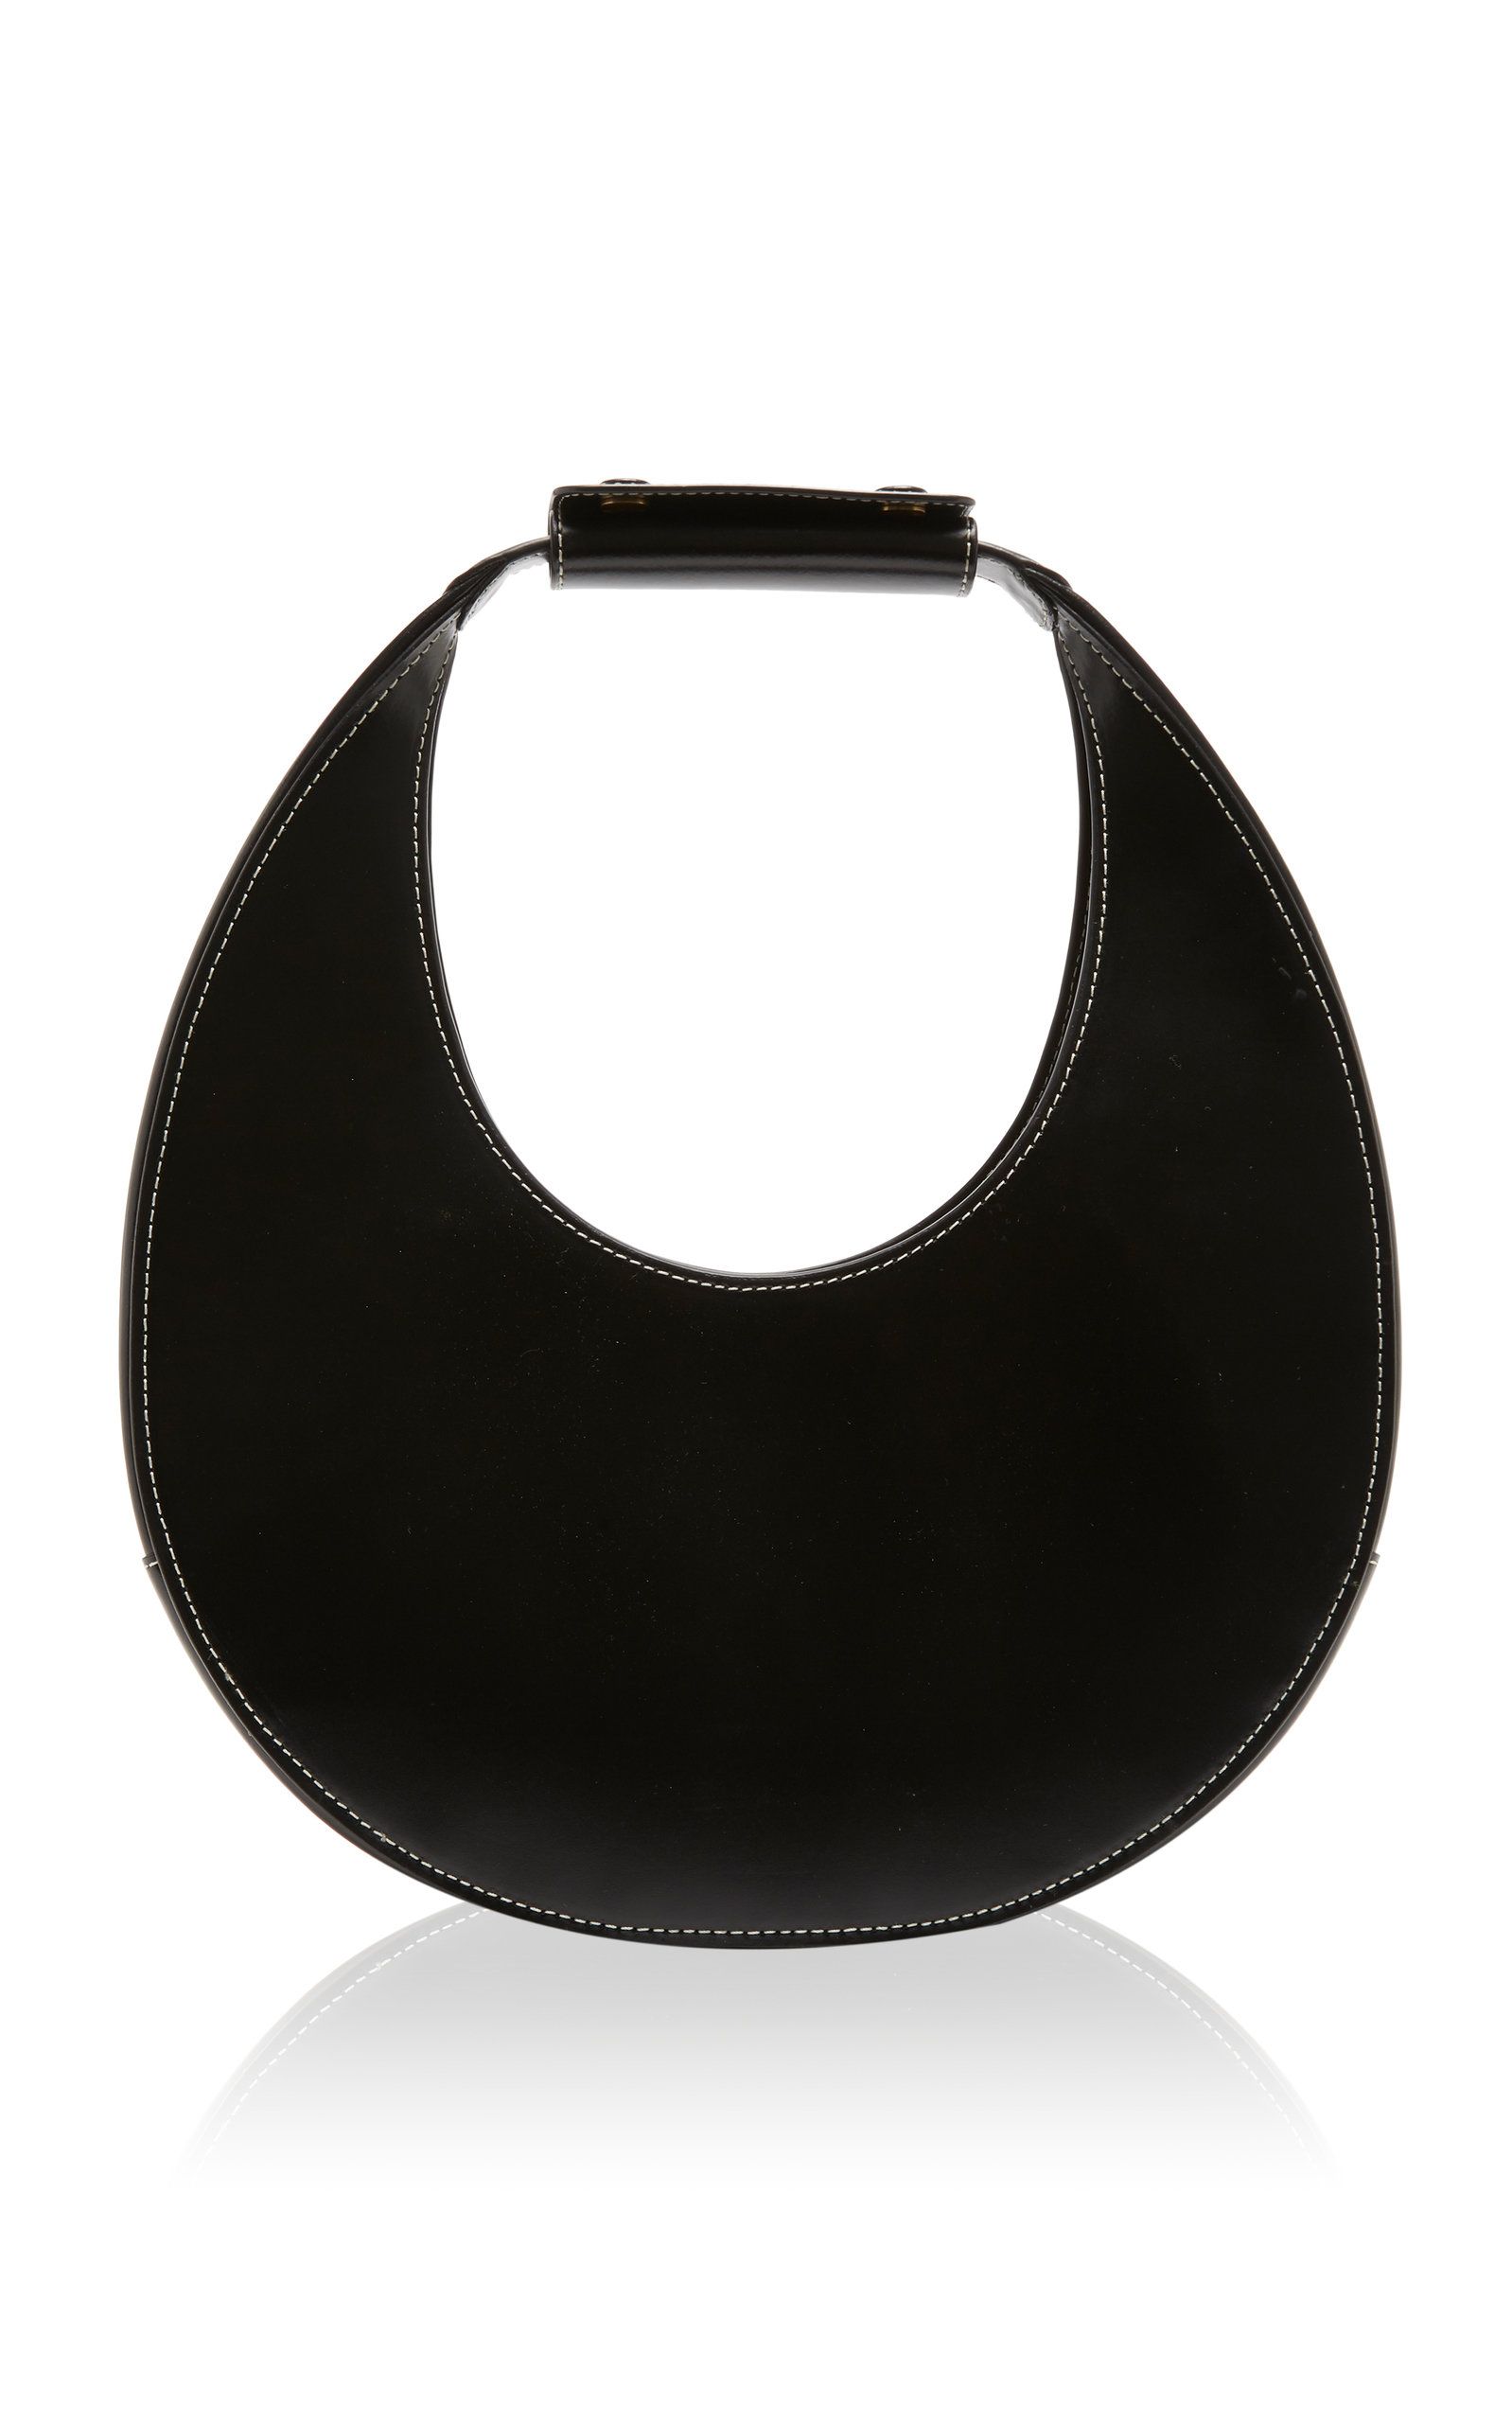 Staud Moon Leather Top Handle Bag | Moda Operandi Global